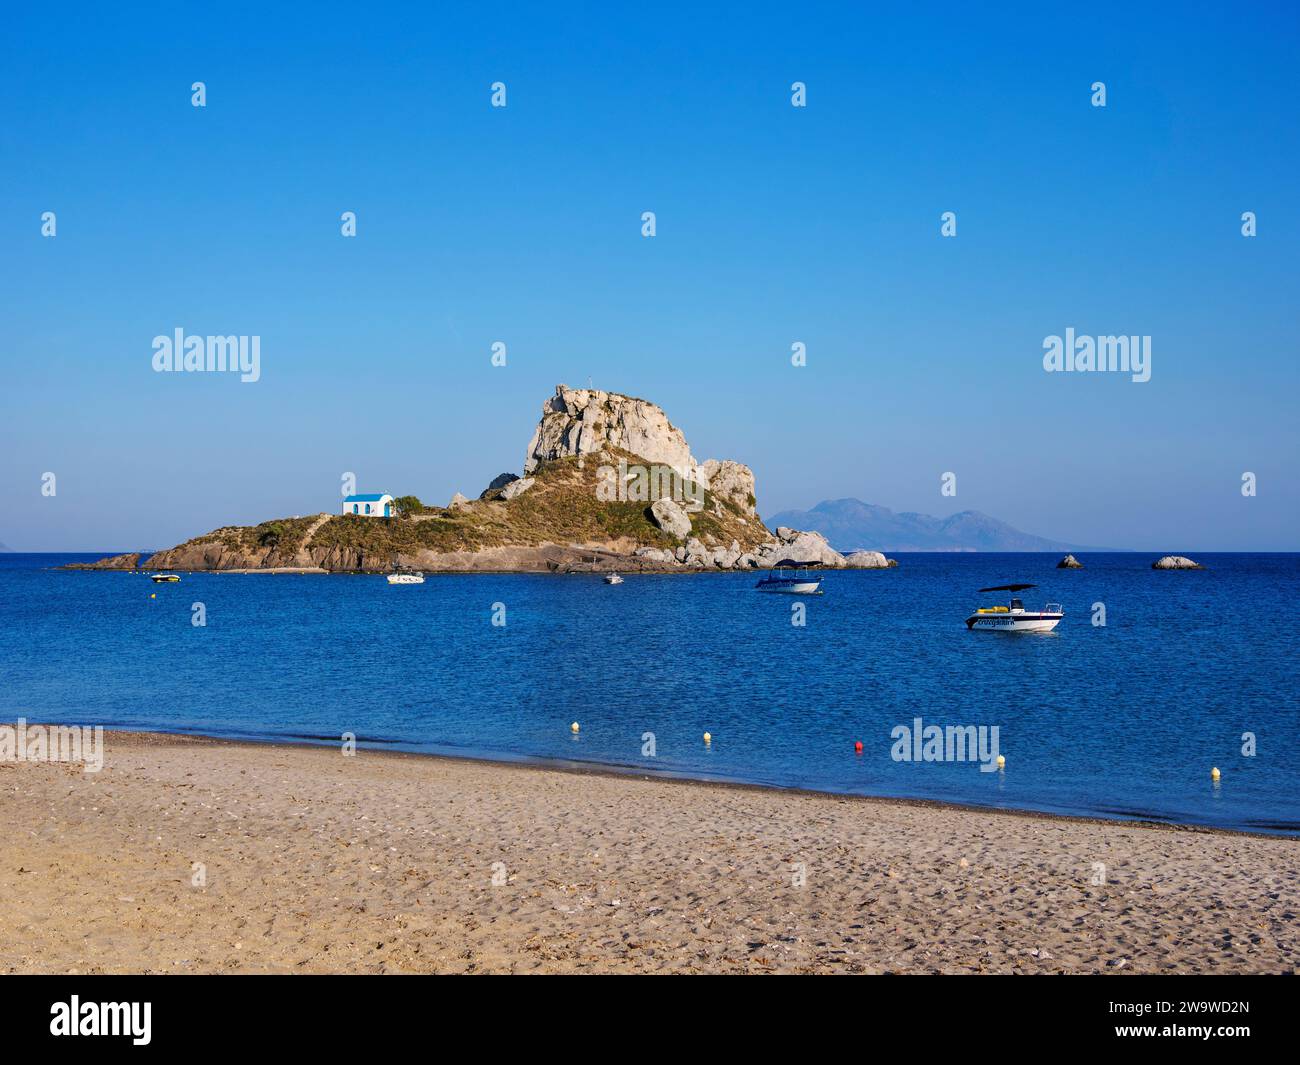 Kastri Island seen from Agios Stefanos Beach, Kos Island, Dodecanese, Greece Stock Photo